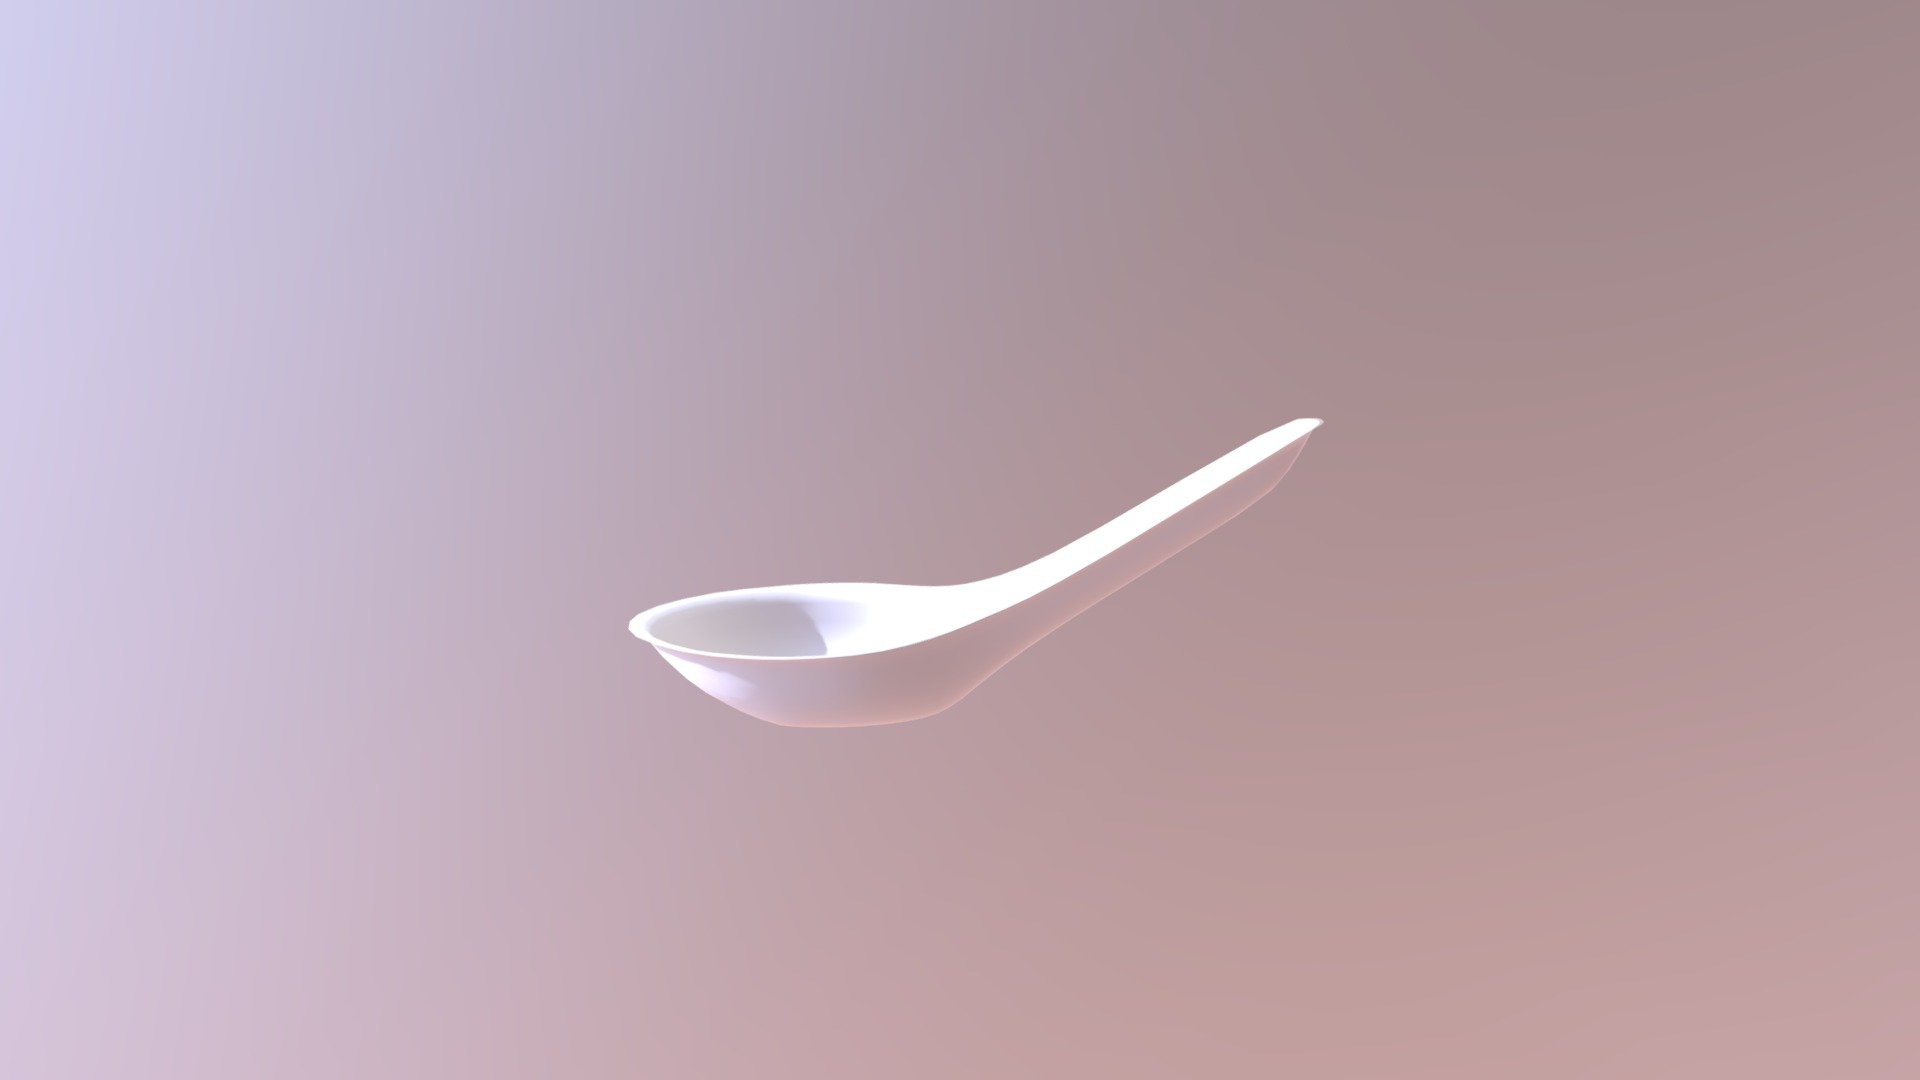 Spoon - Spoon - 3D model by dinosaur860504 3d model